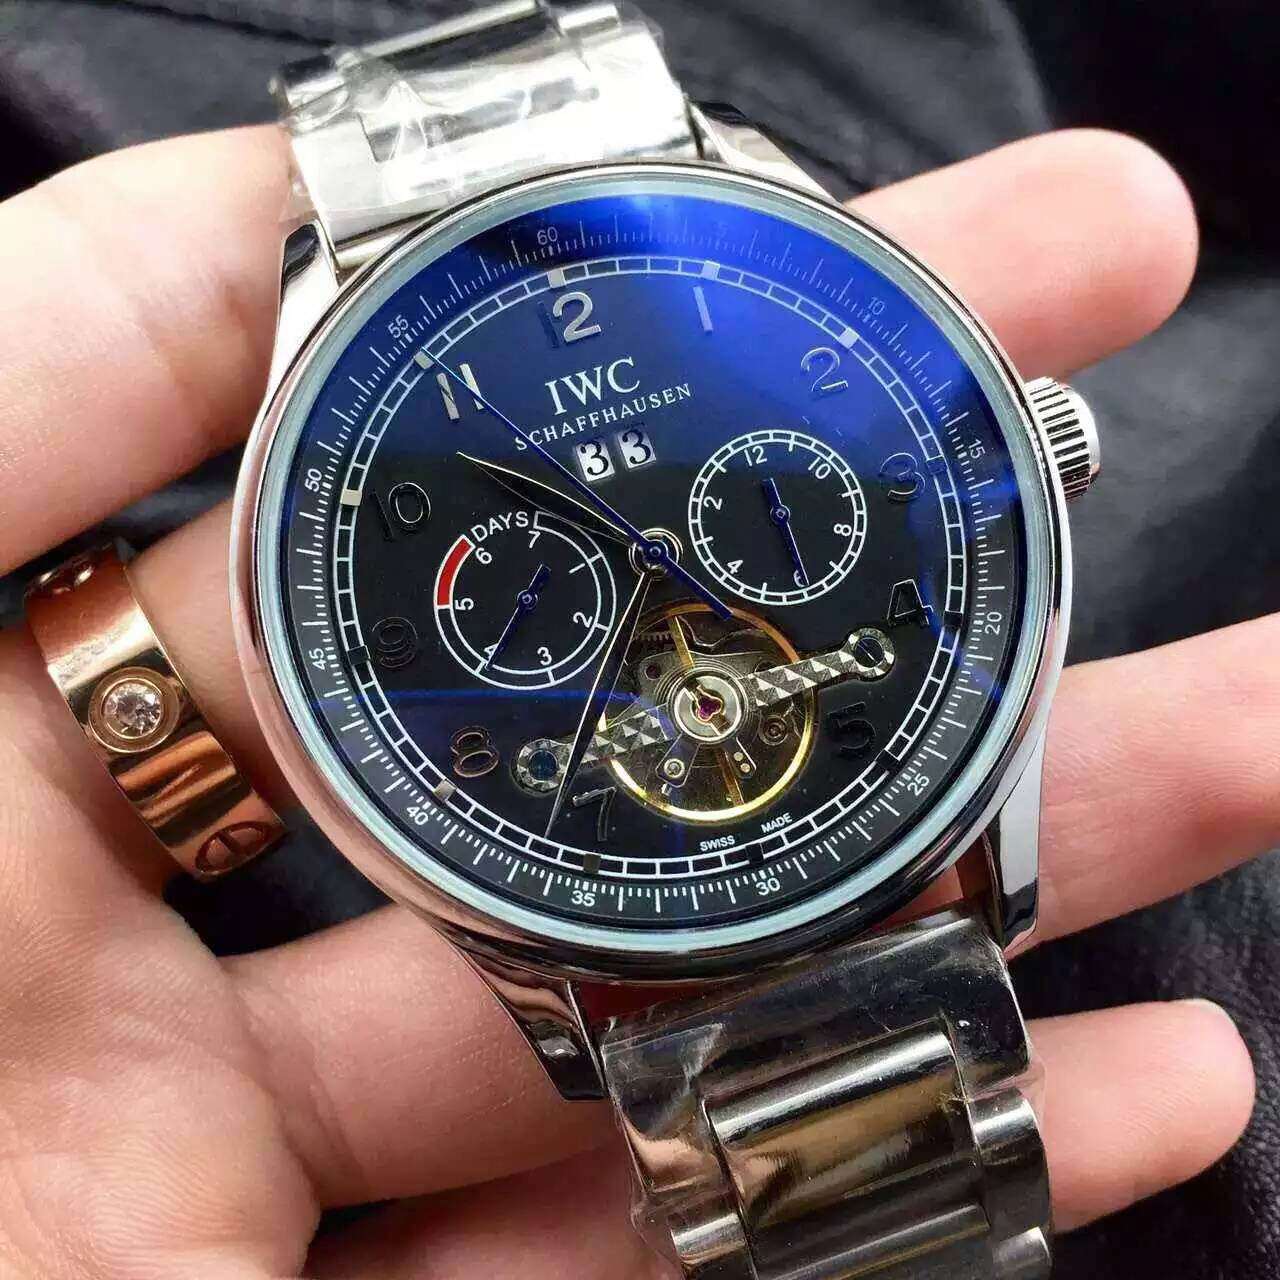 萬國 IWC 復雜多功能系列 男士自動機械腕錶爆款上市 鍍膜高密度鏡面 真牛皮皮帶 -rhid-116383